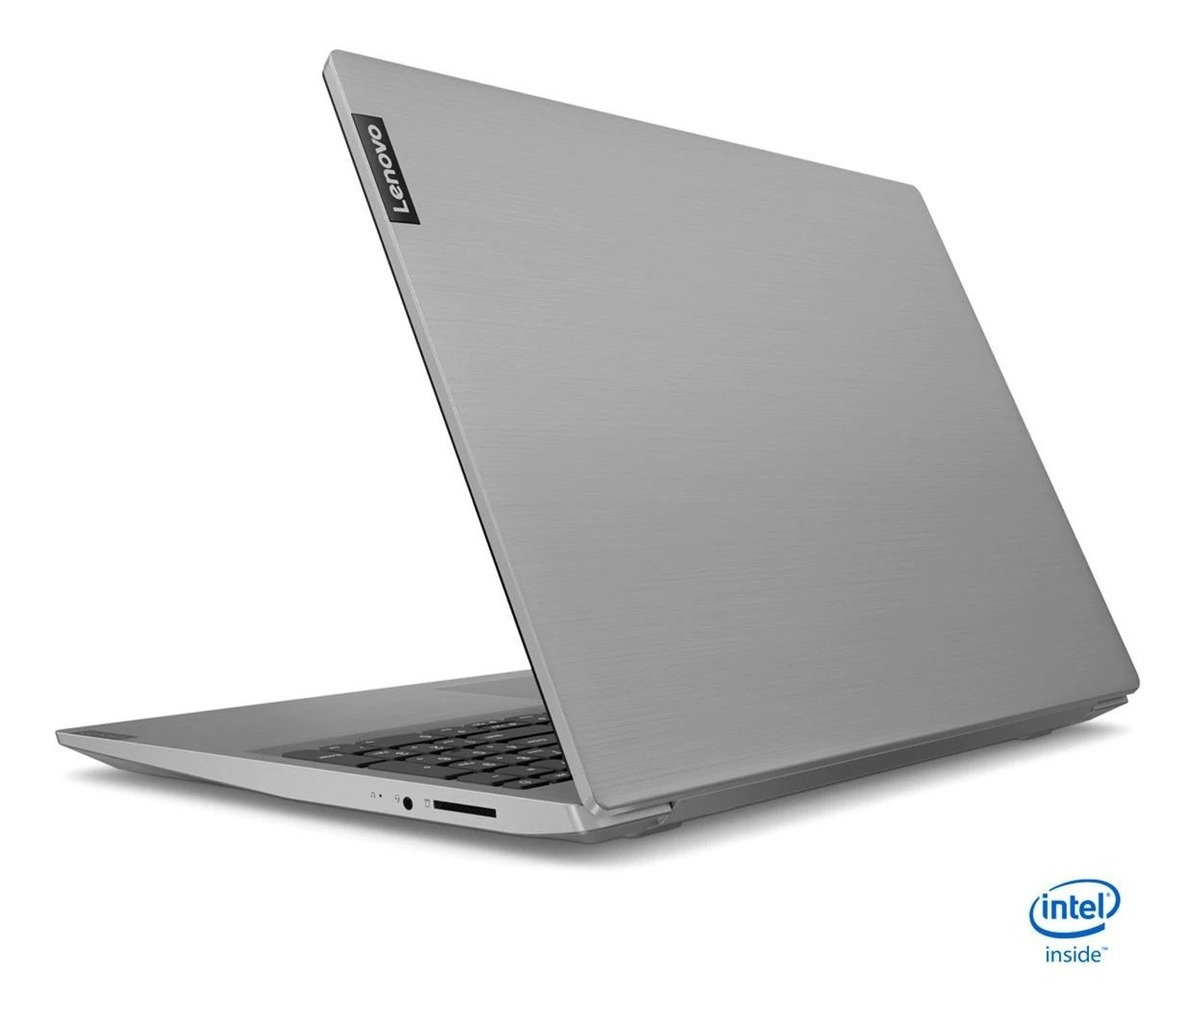 Laptop Lenovo Ideapad S145 156 1tb Amd A6 4gb Ram Mercado Libre